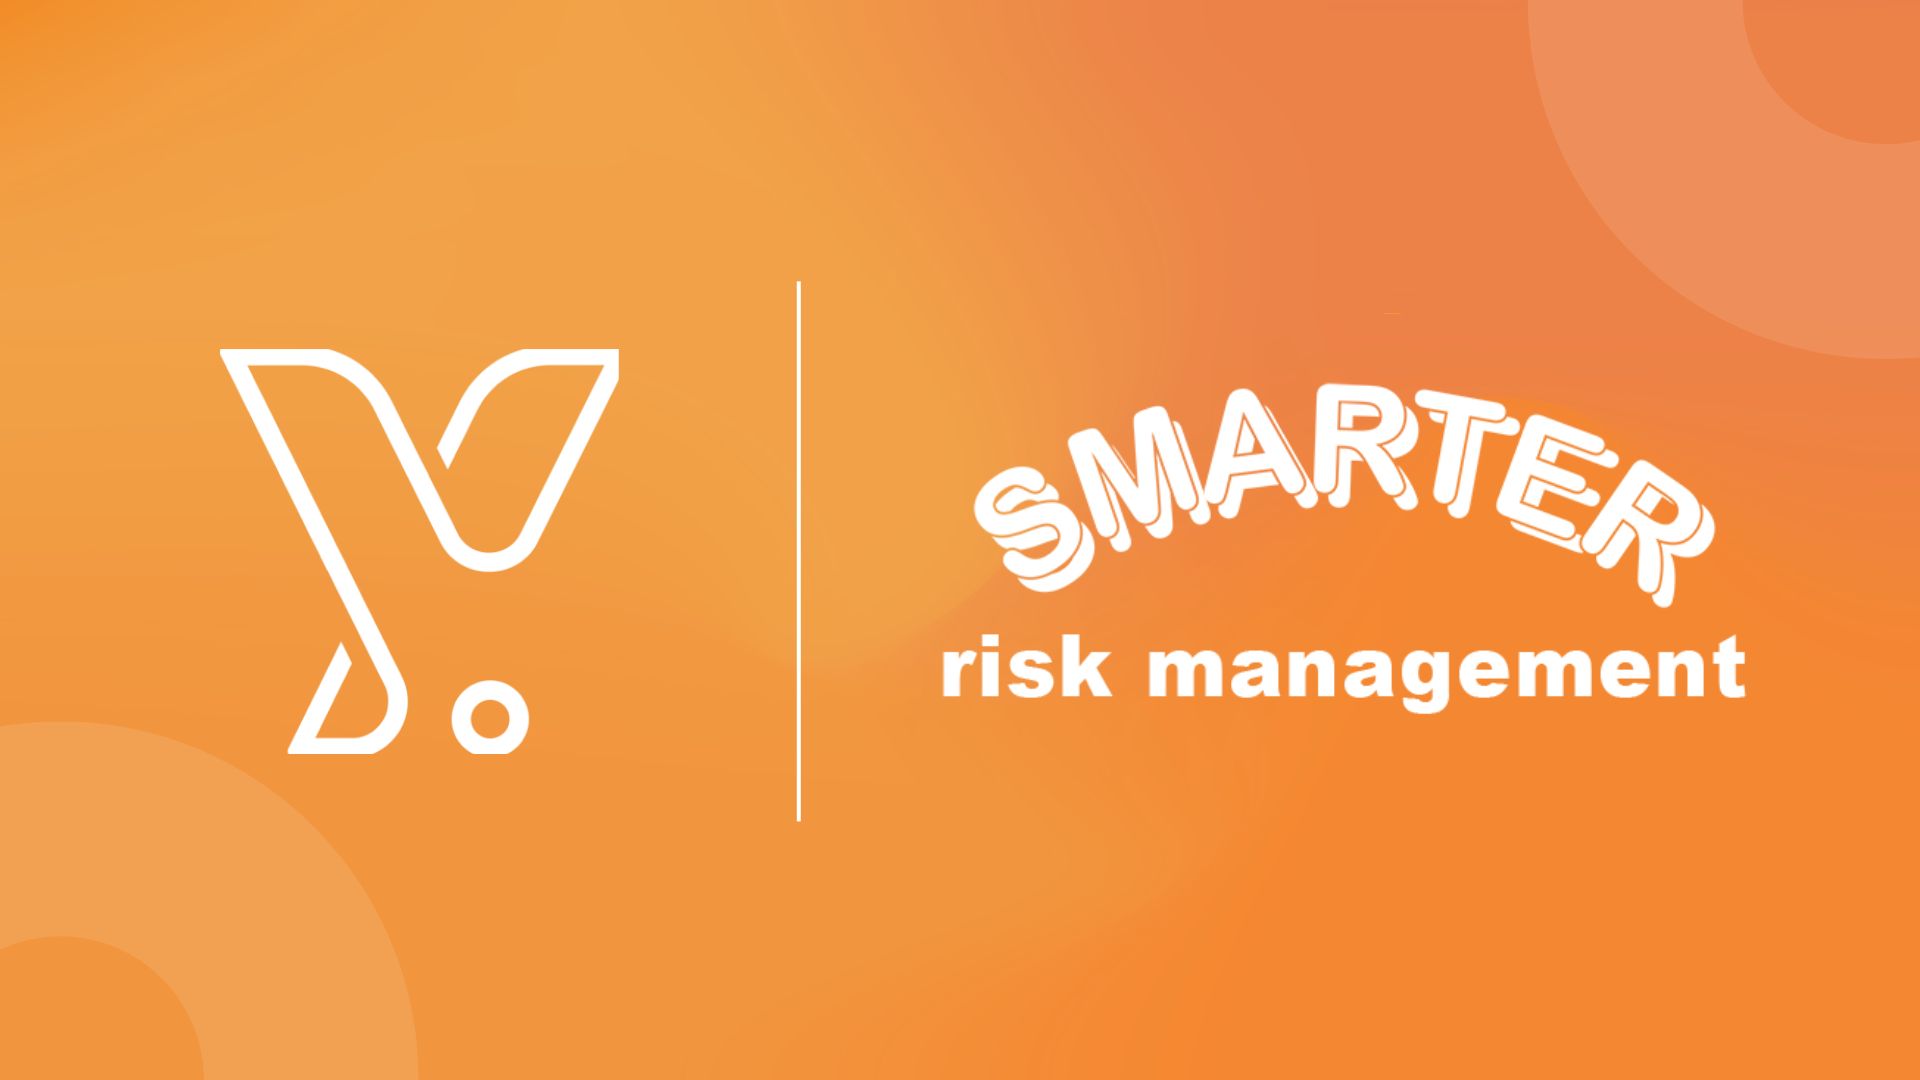 Strategic Partnership with SMARTER risk management